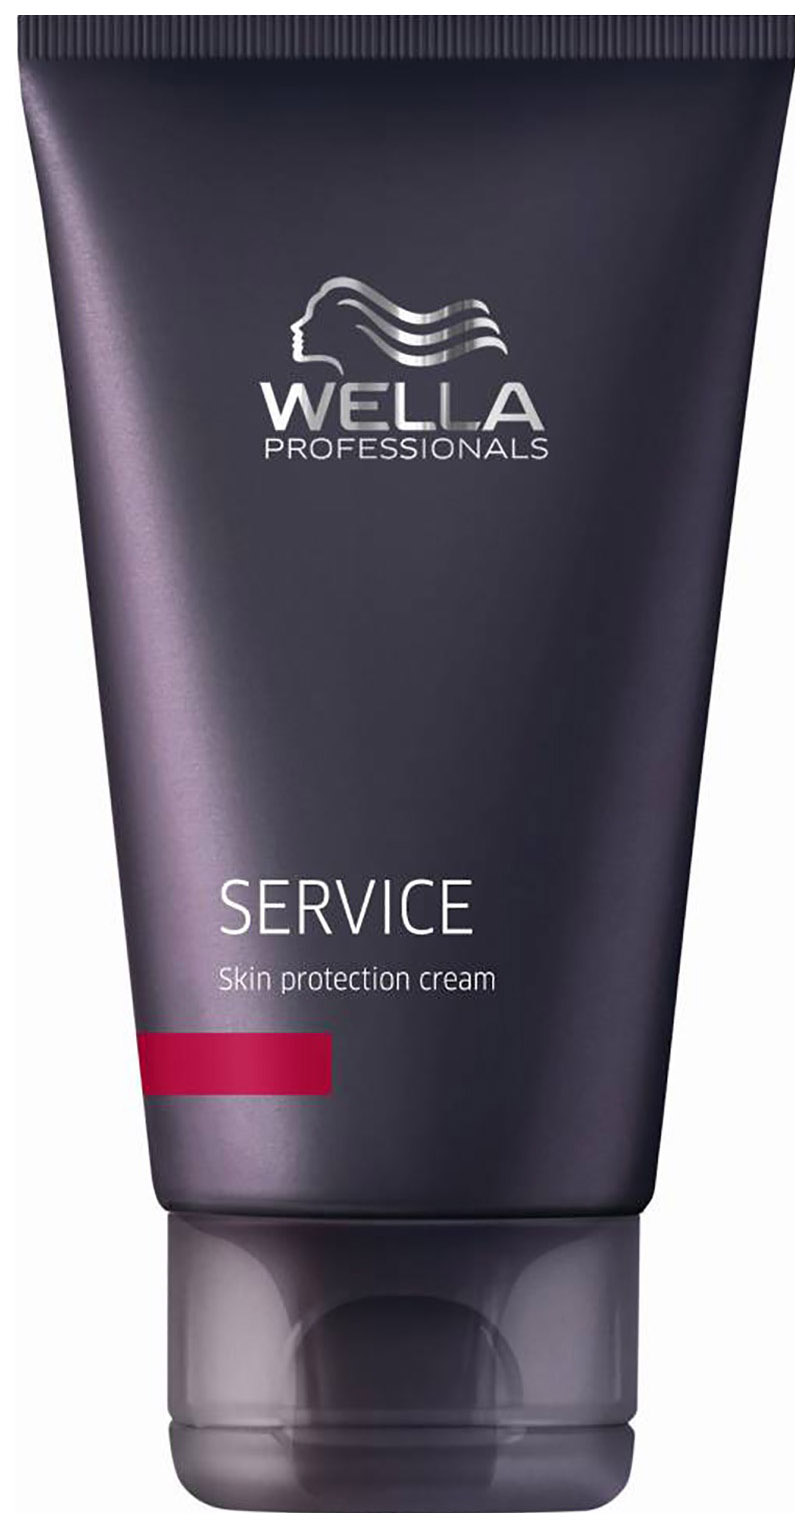 Купить Крем для волос Wella Professionals Service Line для защиты кожи головы 75 мл, Care Service Line